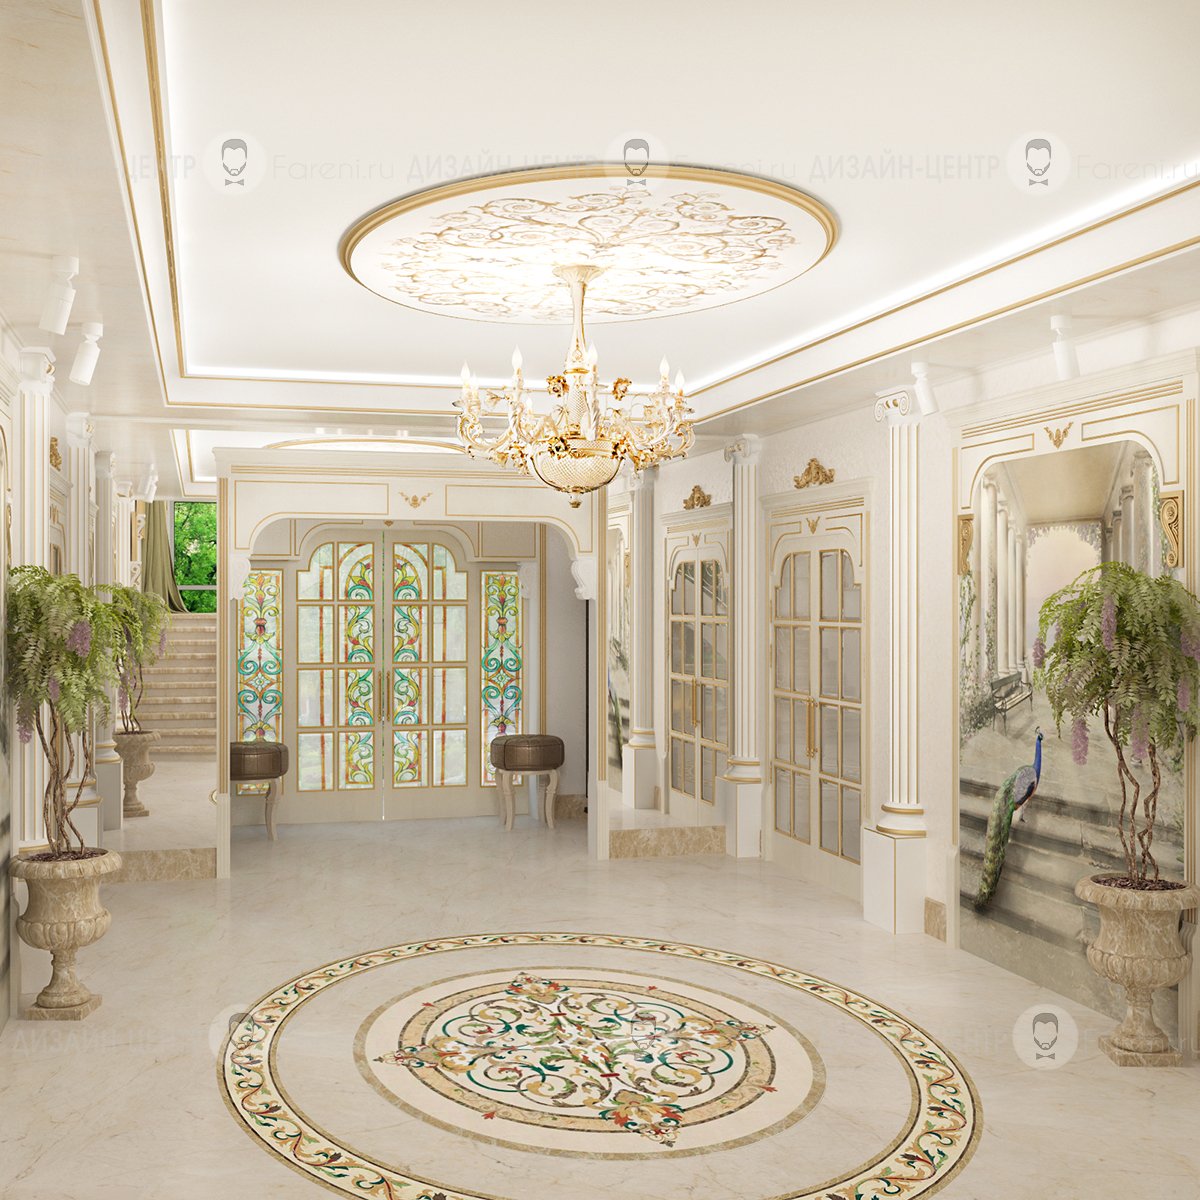 Город холов. Antonovich Design коридор. Холл в доме. Интерьер холла. Фойе в классическом стиле.